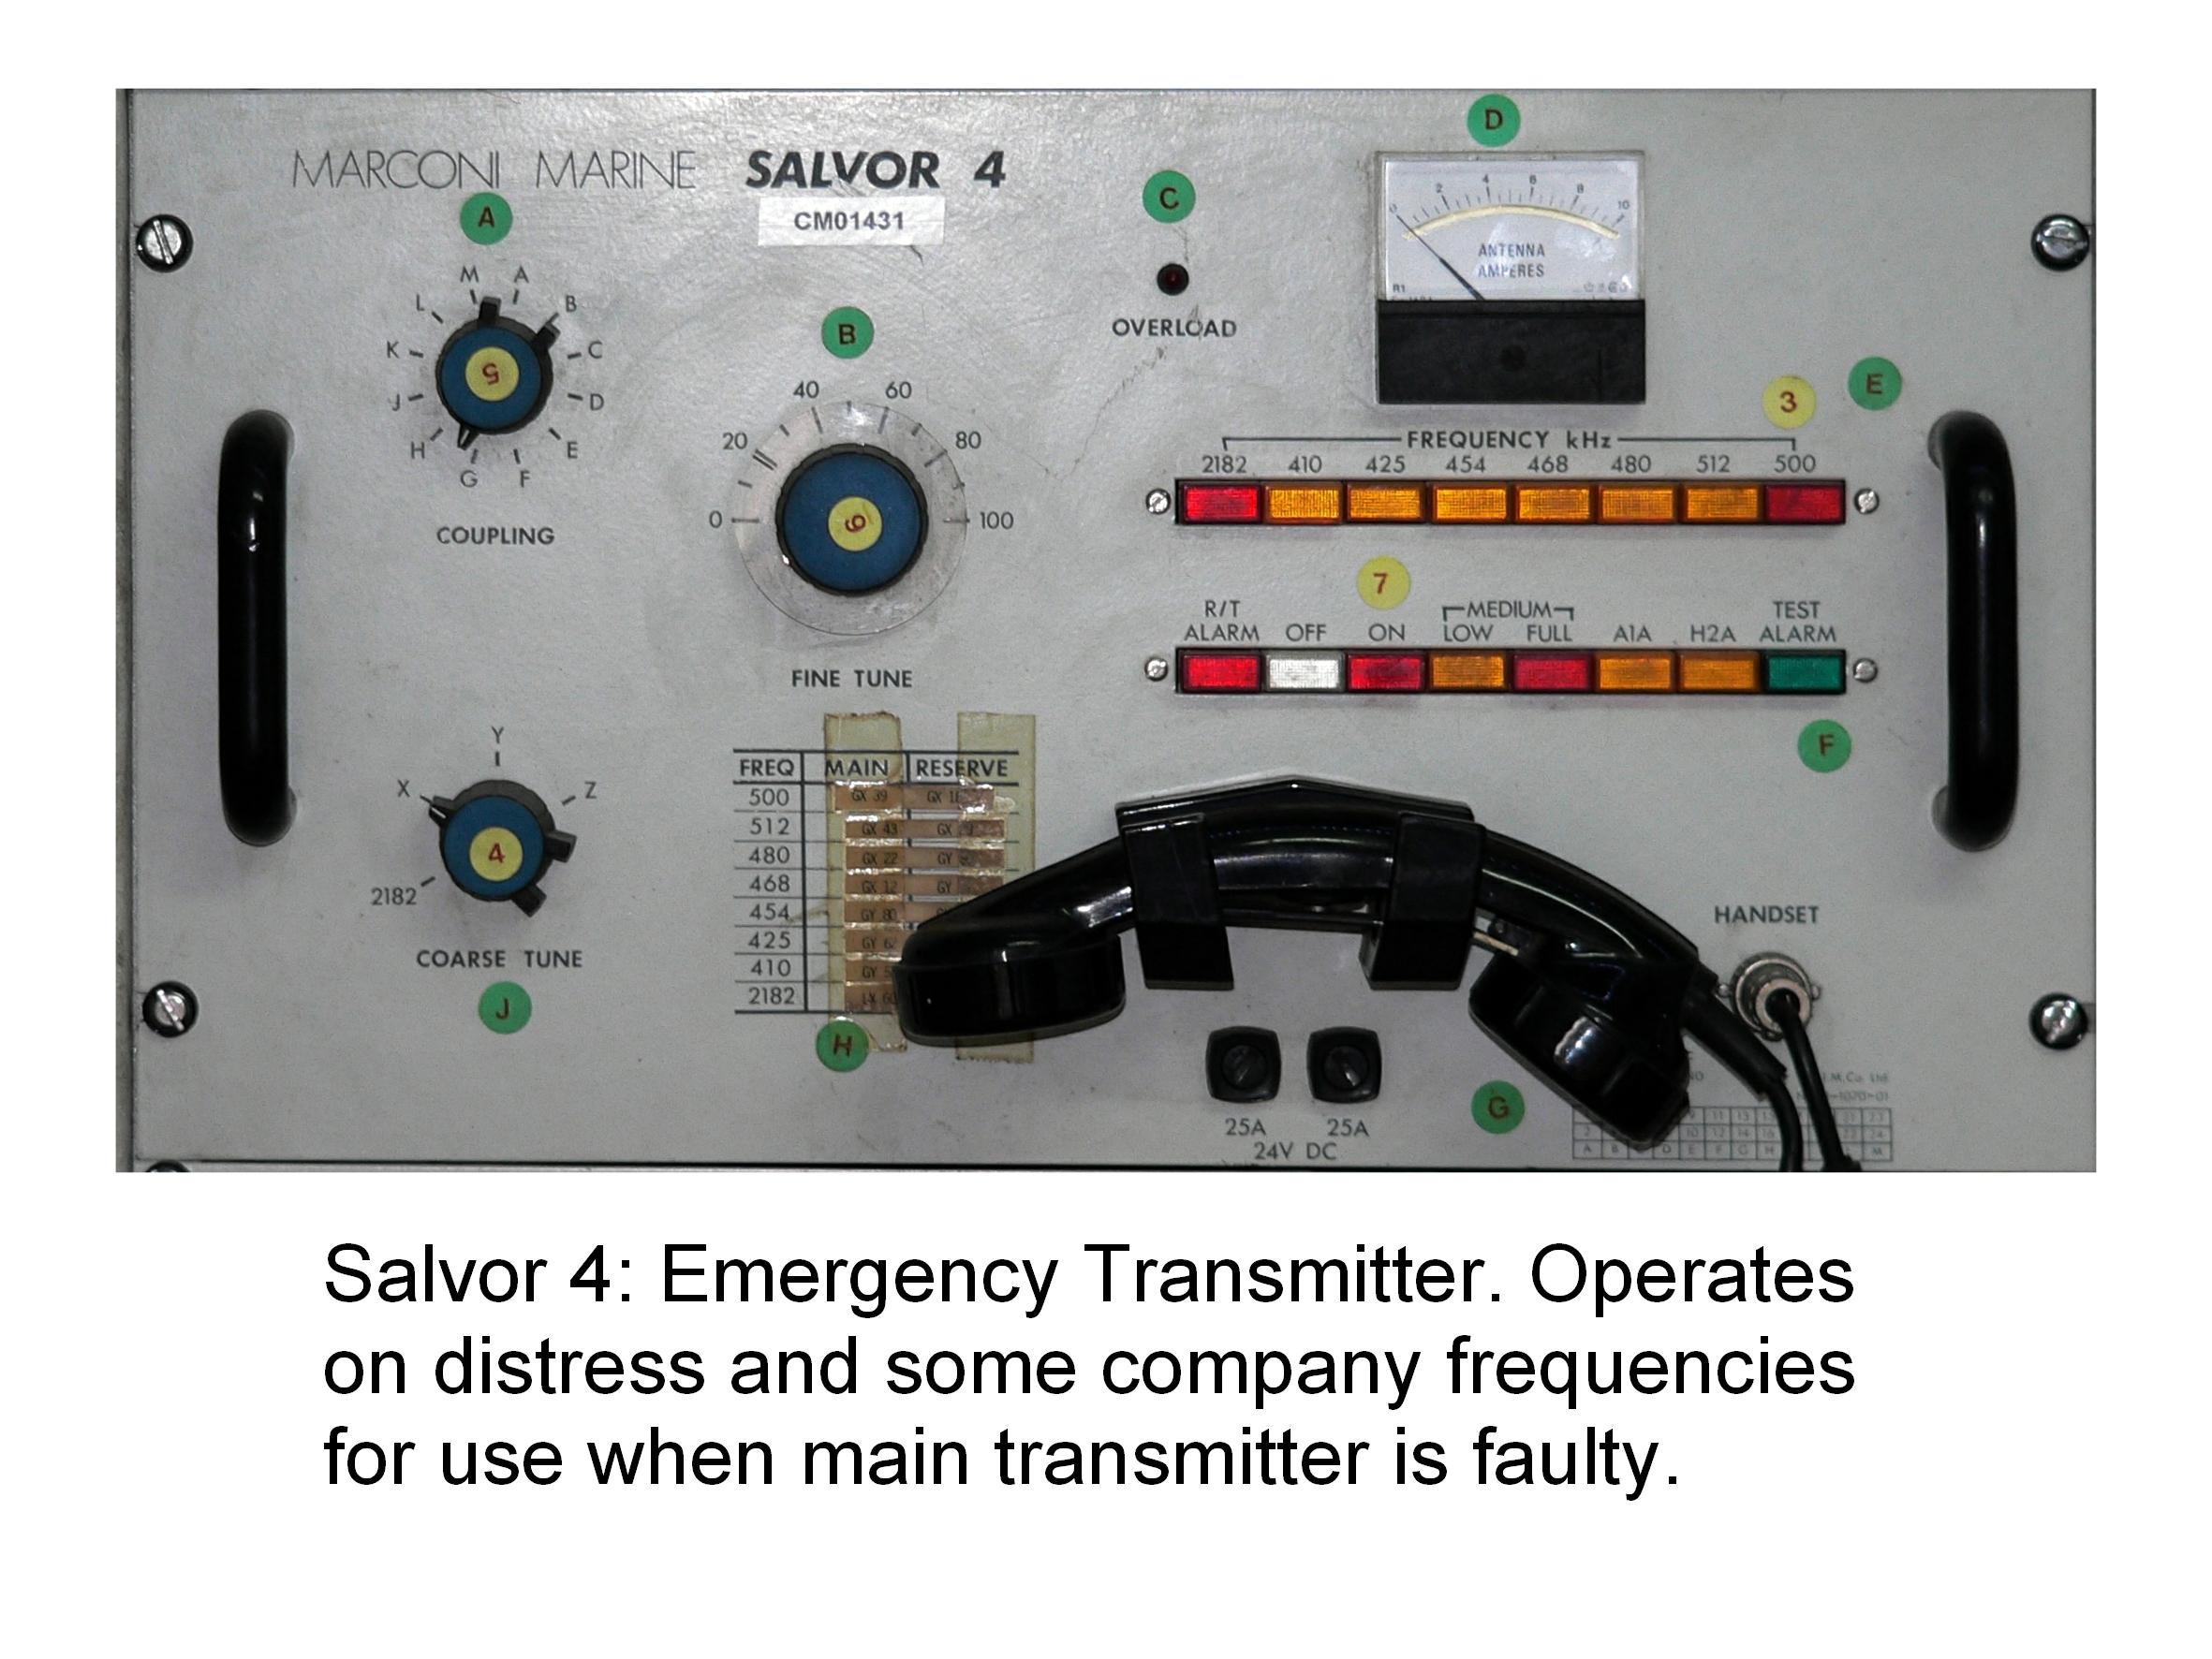 Salvor 4: Emergency Transmitter